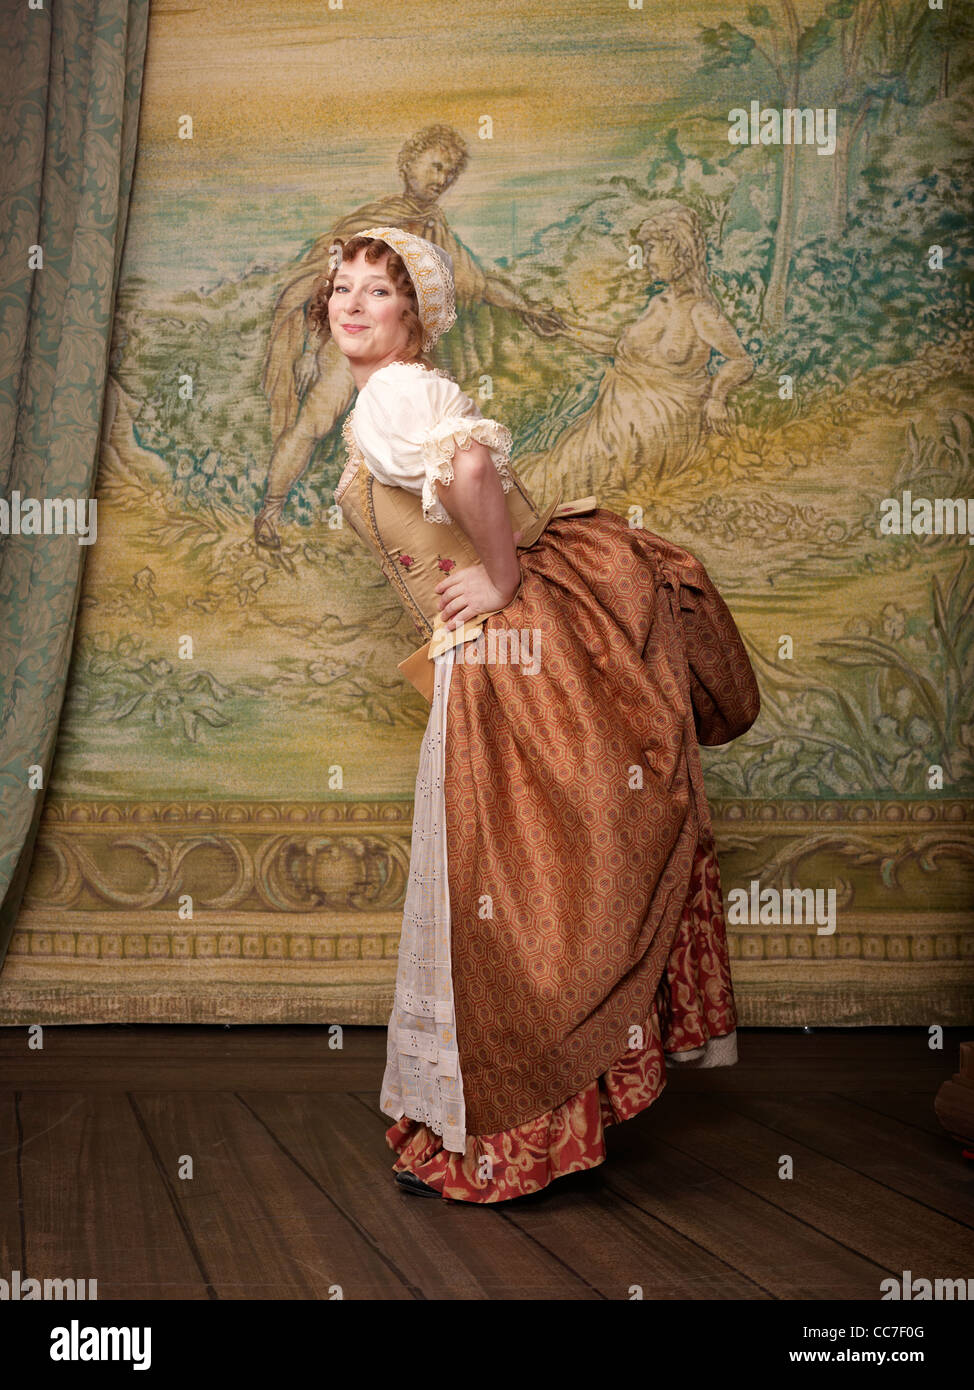 Schauspielerin auf der Bühne in altmodischer Tracht gekleidet Stockfoto